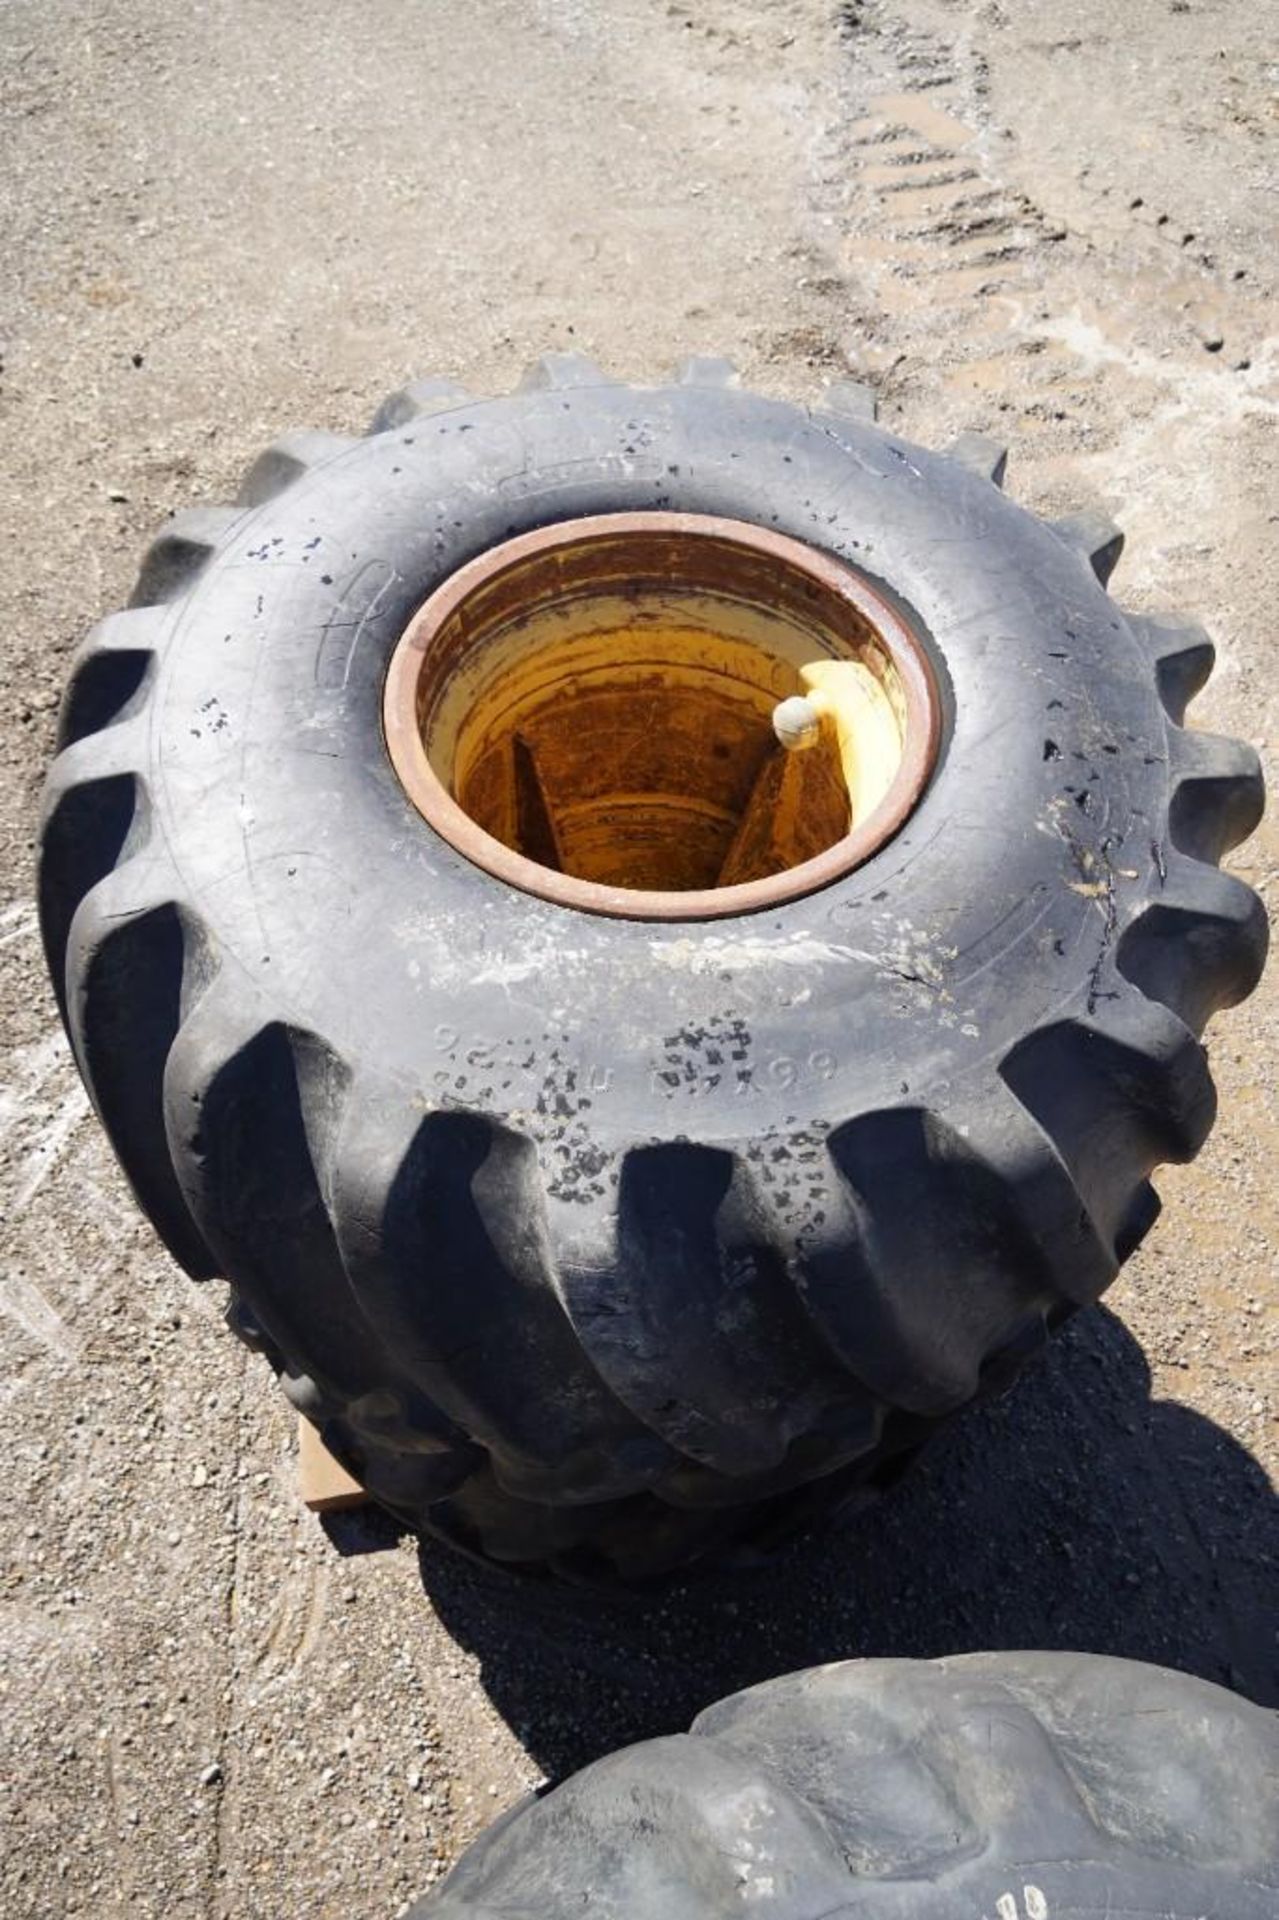 Skidder Tires - Image 19 of 19